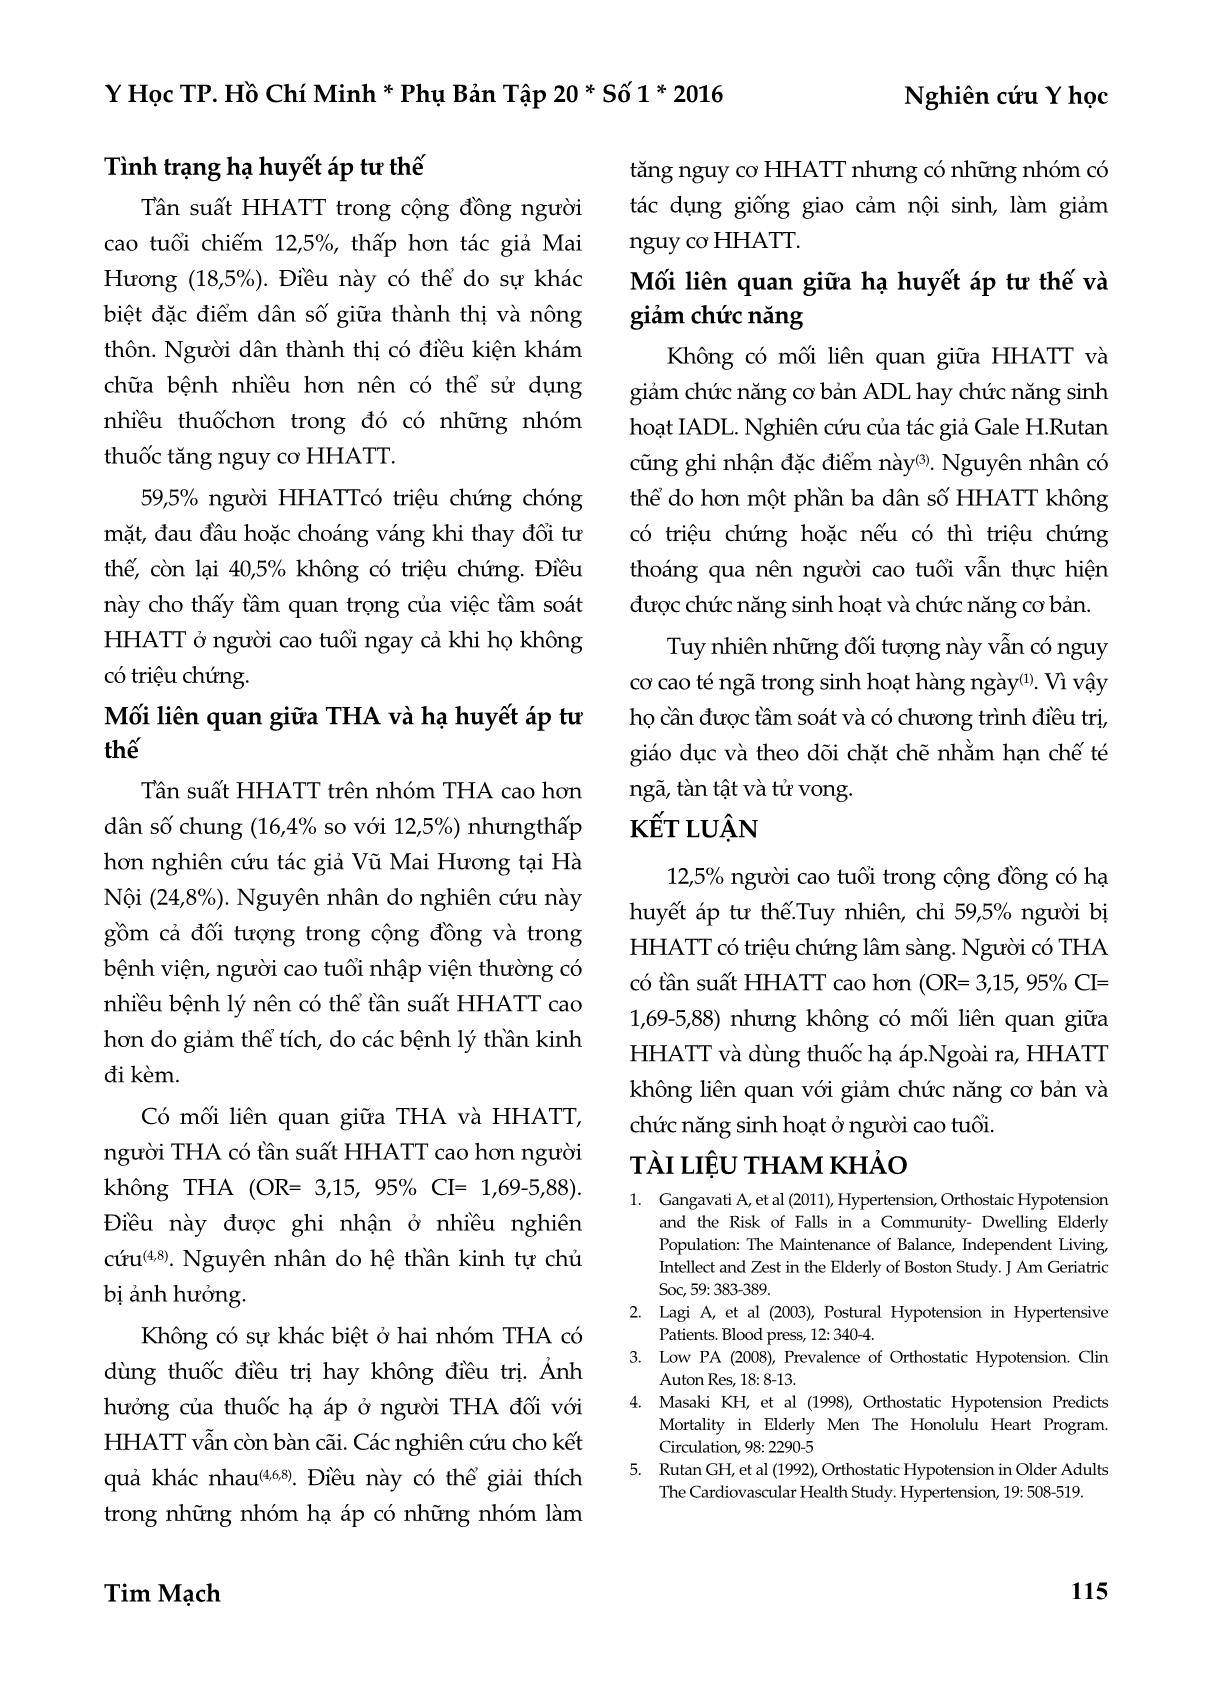 Tình trạng hạ huyết áp tư thế ở người cao tuổi trong cộng đồng xã Vĩnh Thành, tỉnh Bến Tre trang 4